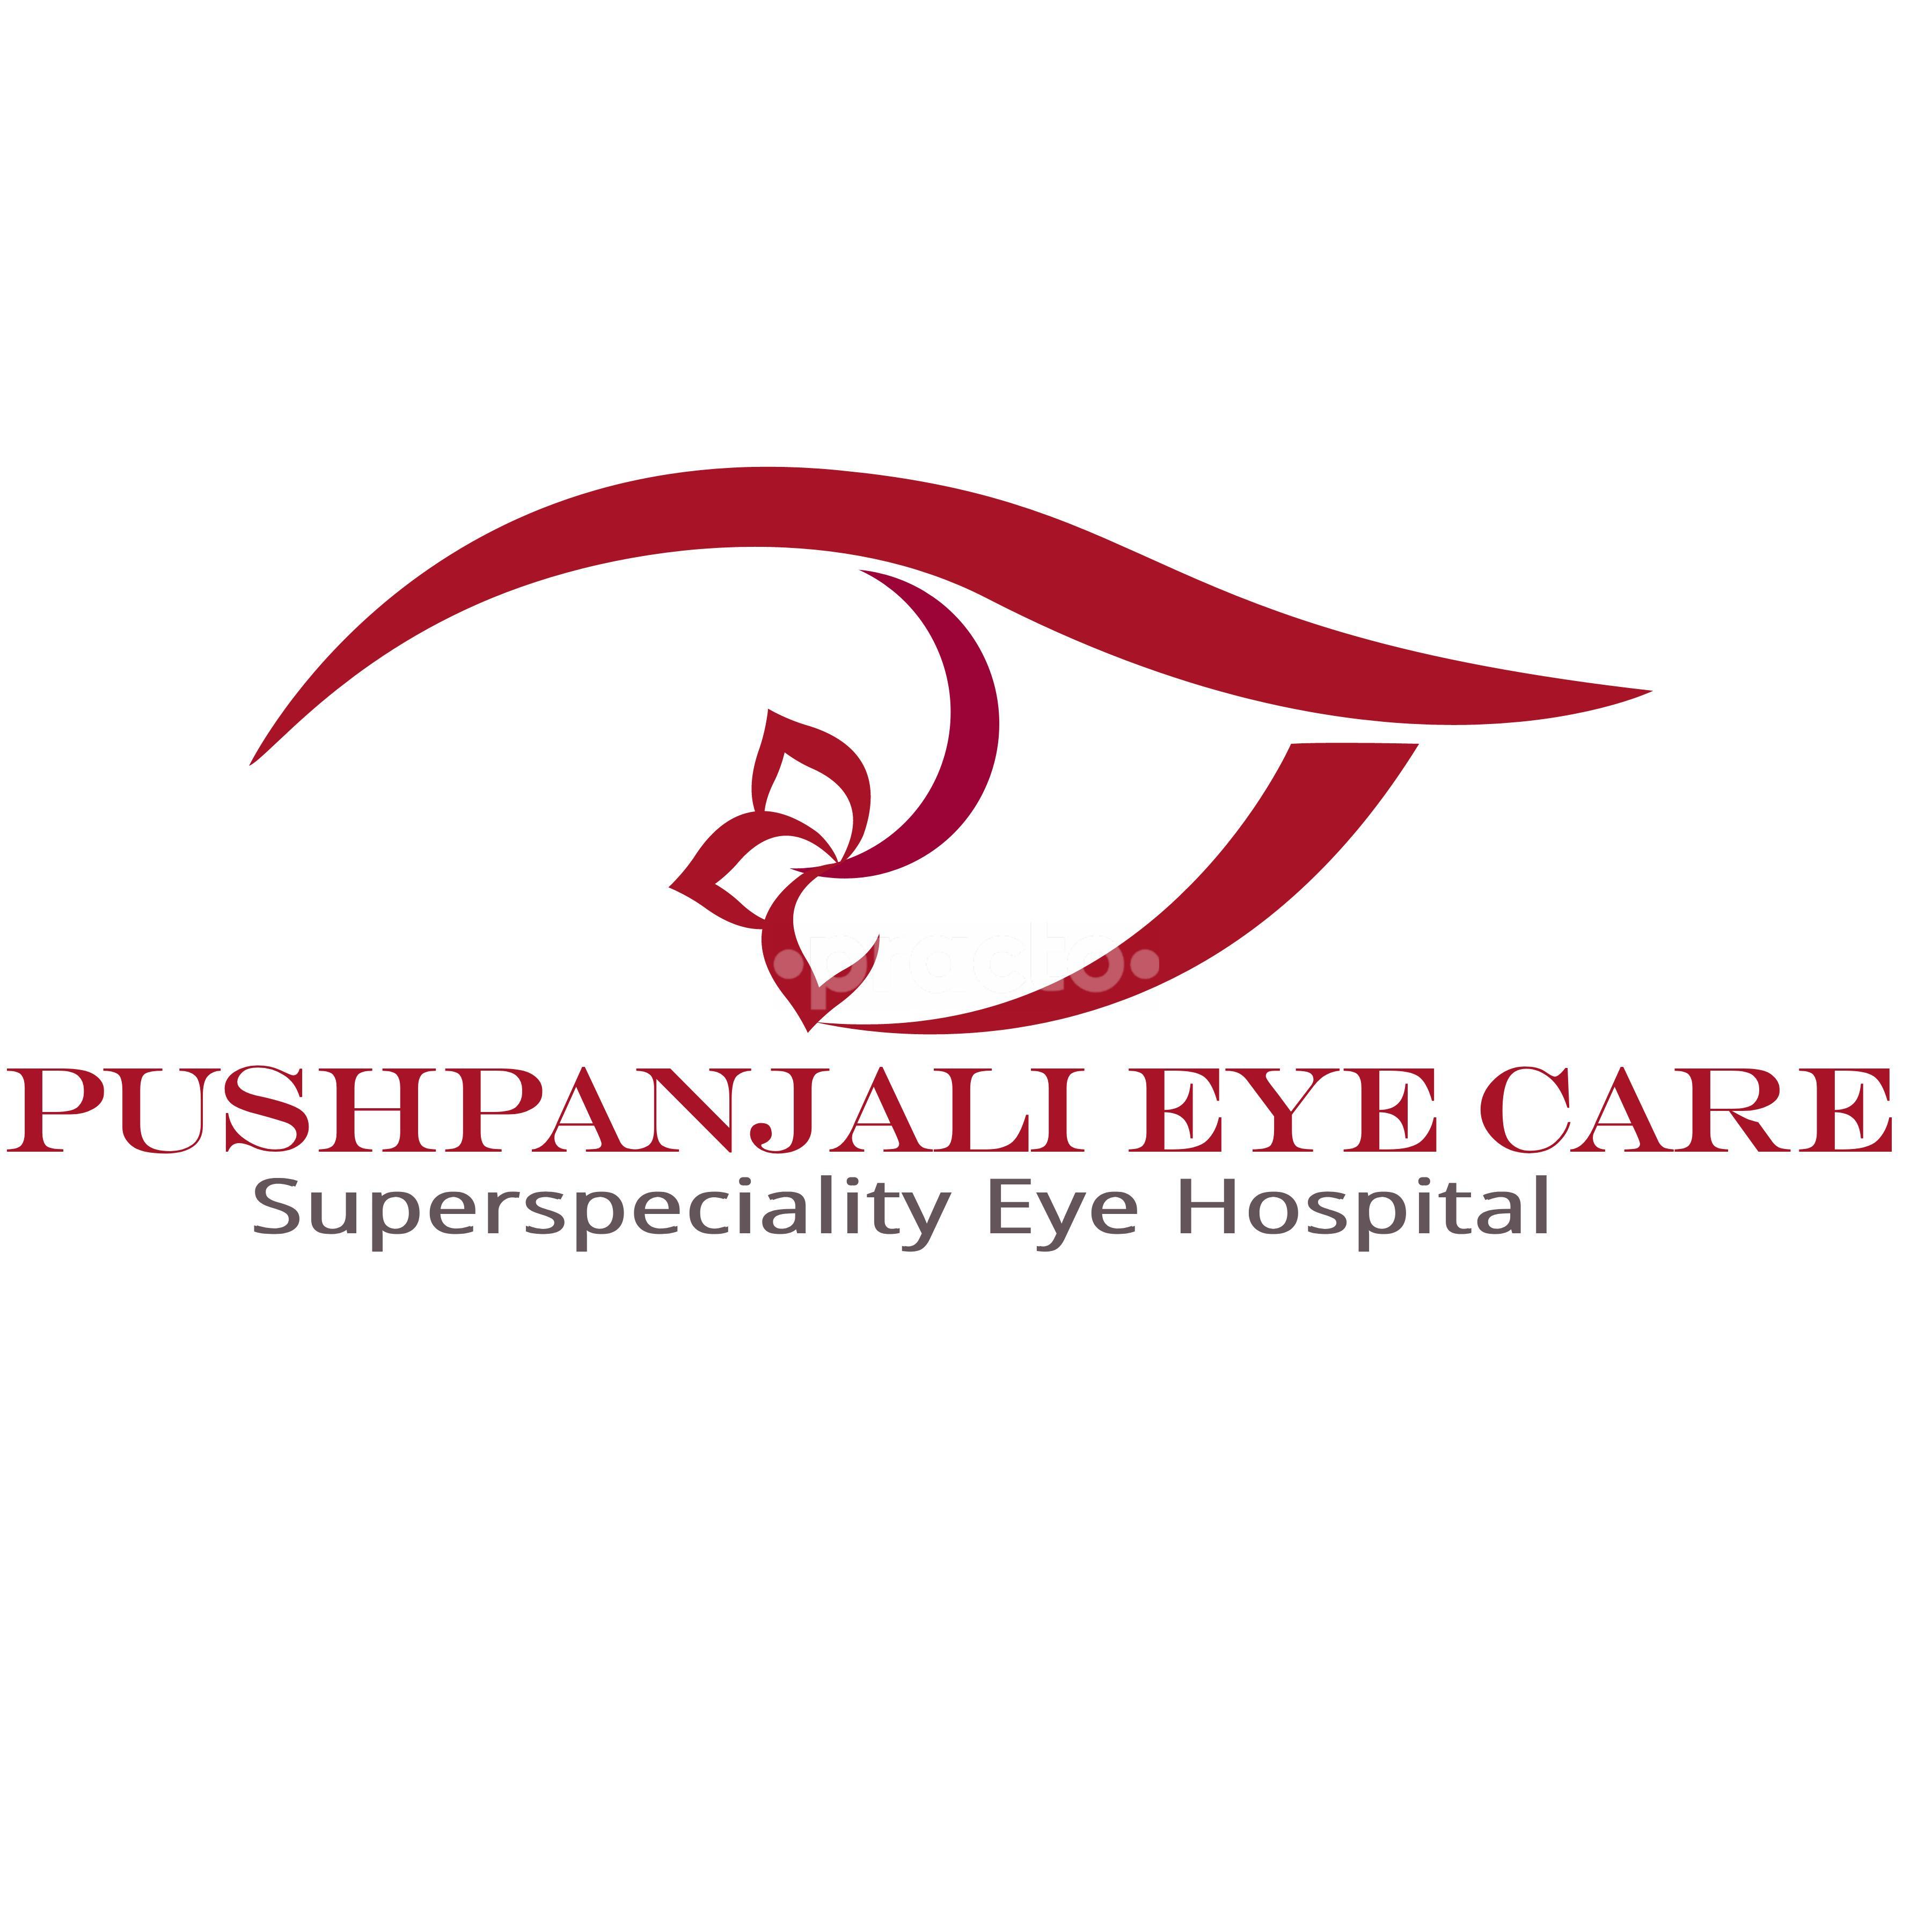 Pushpanjali Eye Care